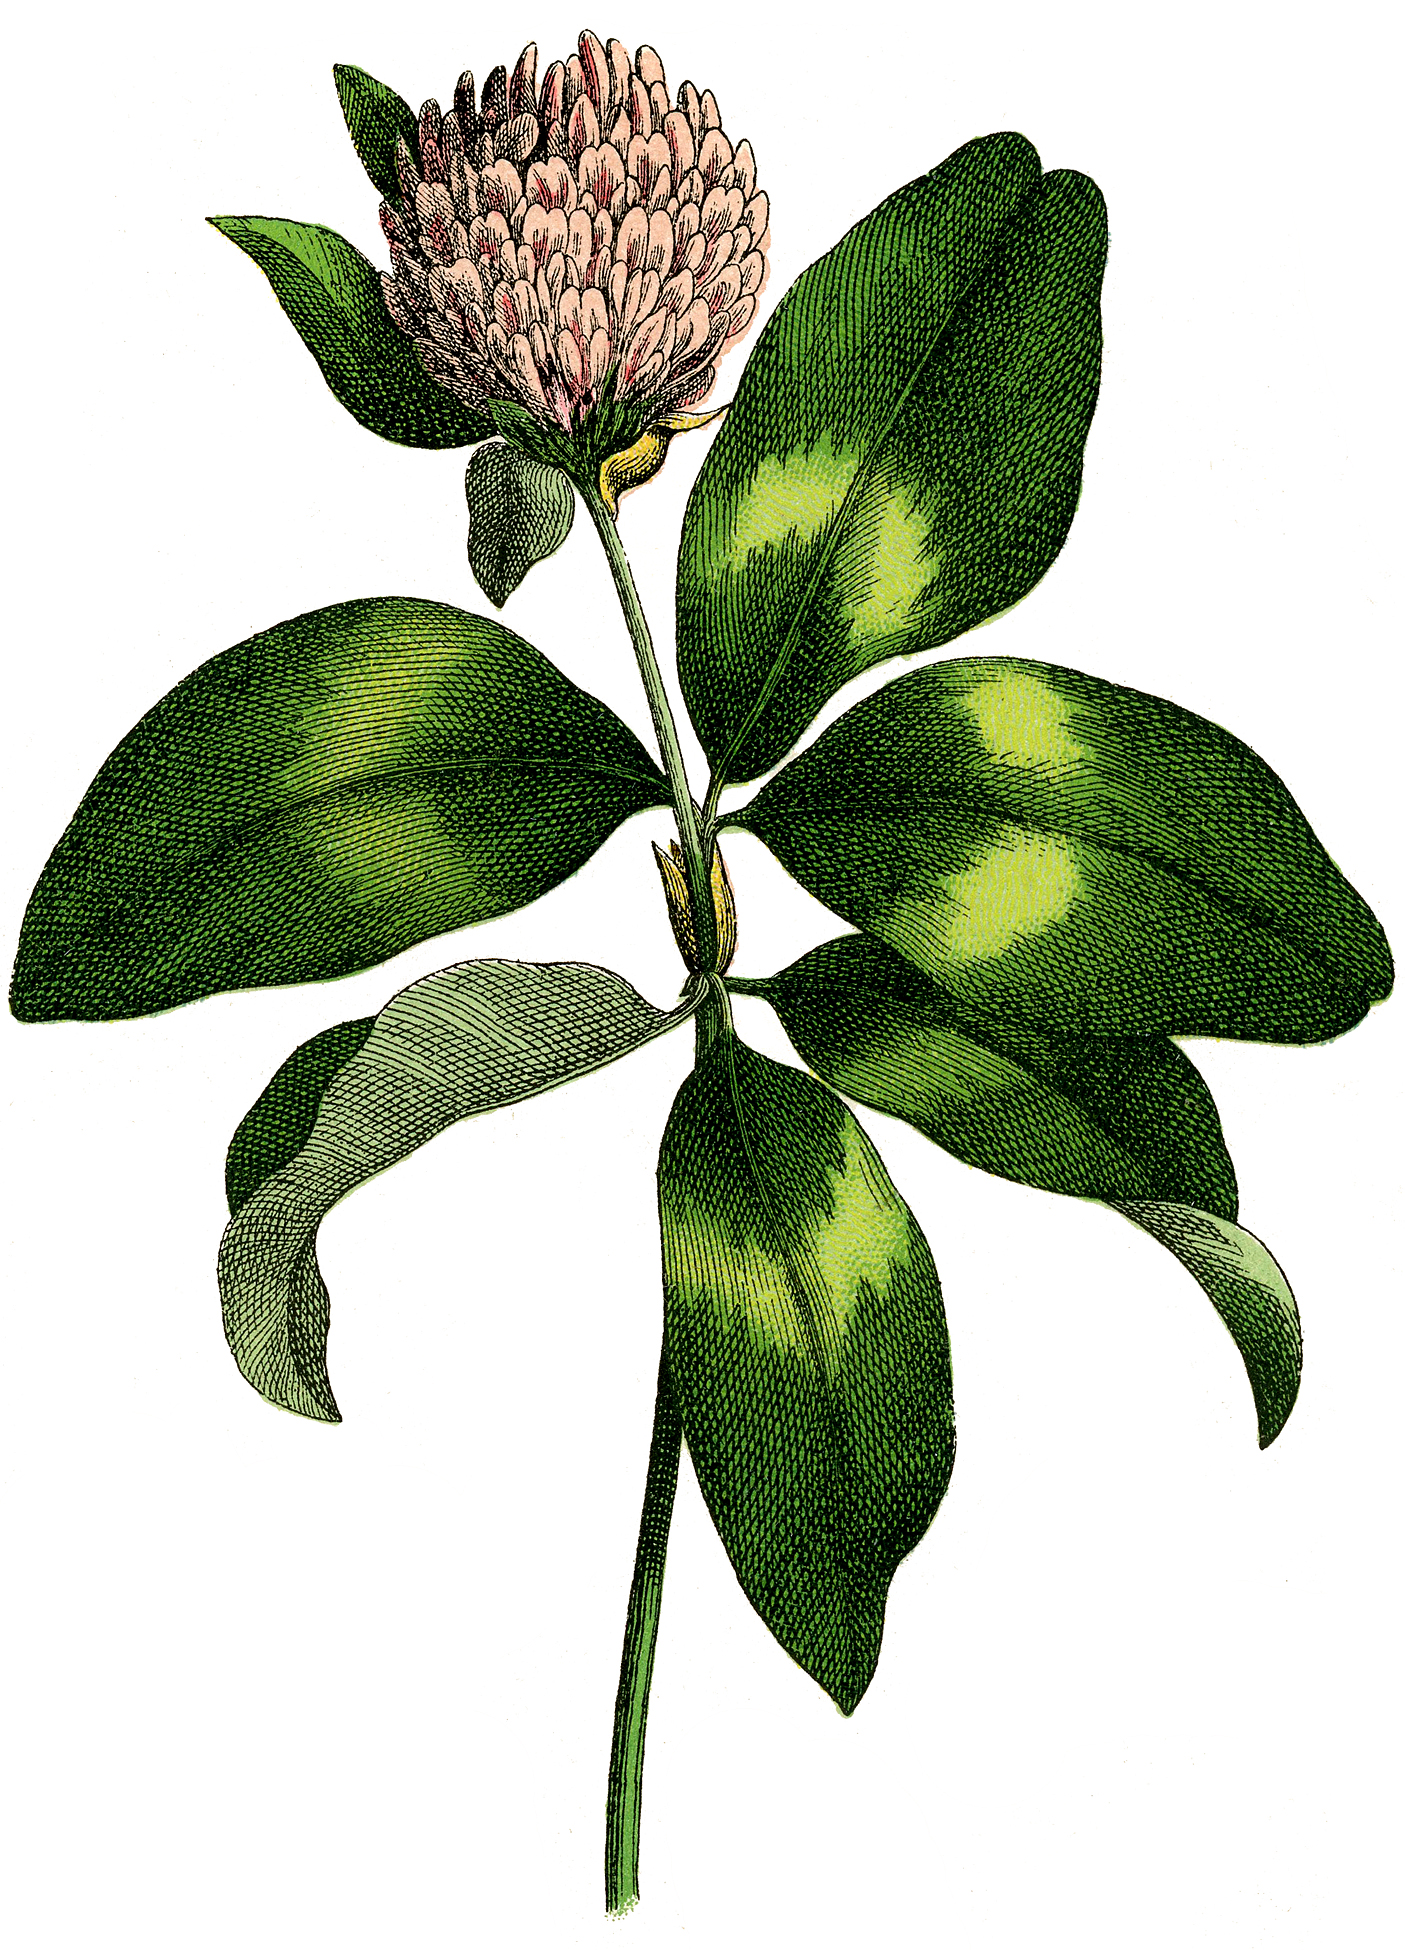 clover flower logo